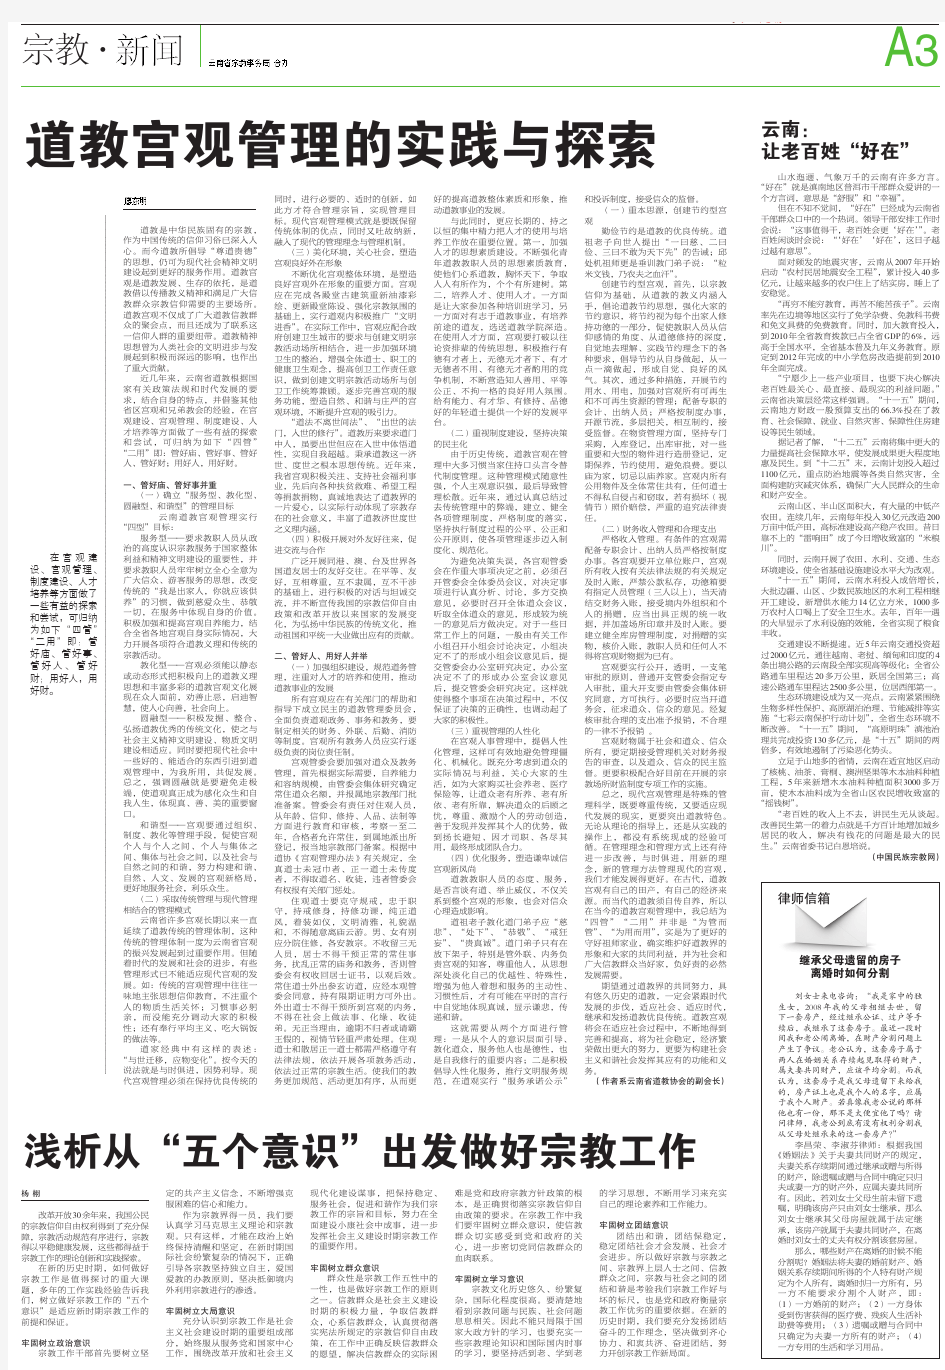 云南省宗教事务局 合办 道教宫观管理的实践与探索